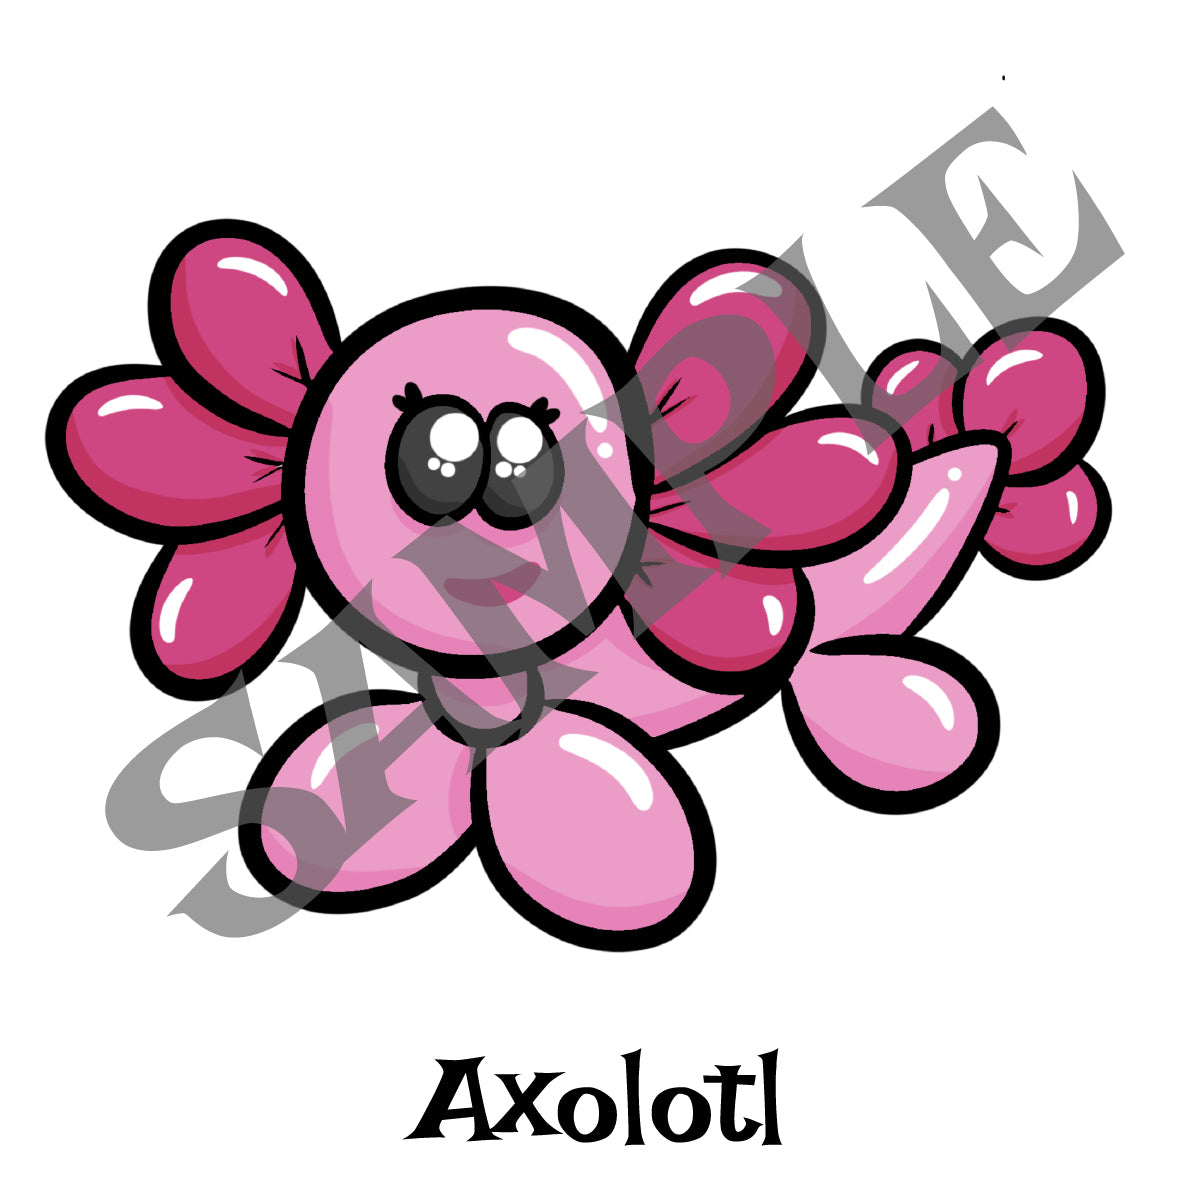 Axolotl / Salamander